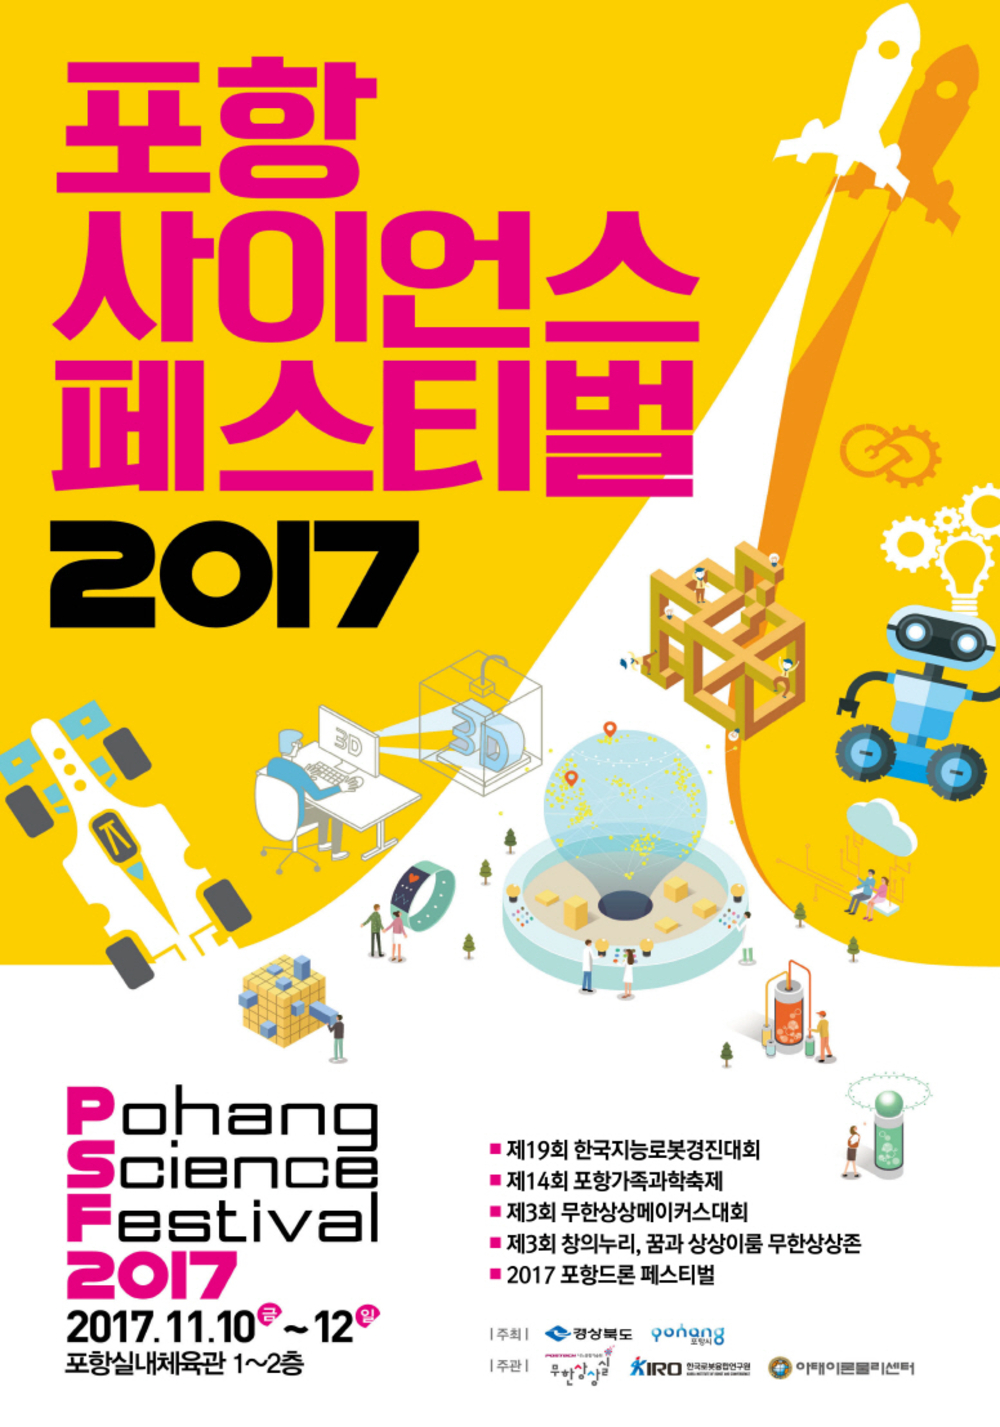 171107 과학과 함께하는 로봇축제의 장, 포항 사이언스페스티벌 2017 개최